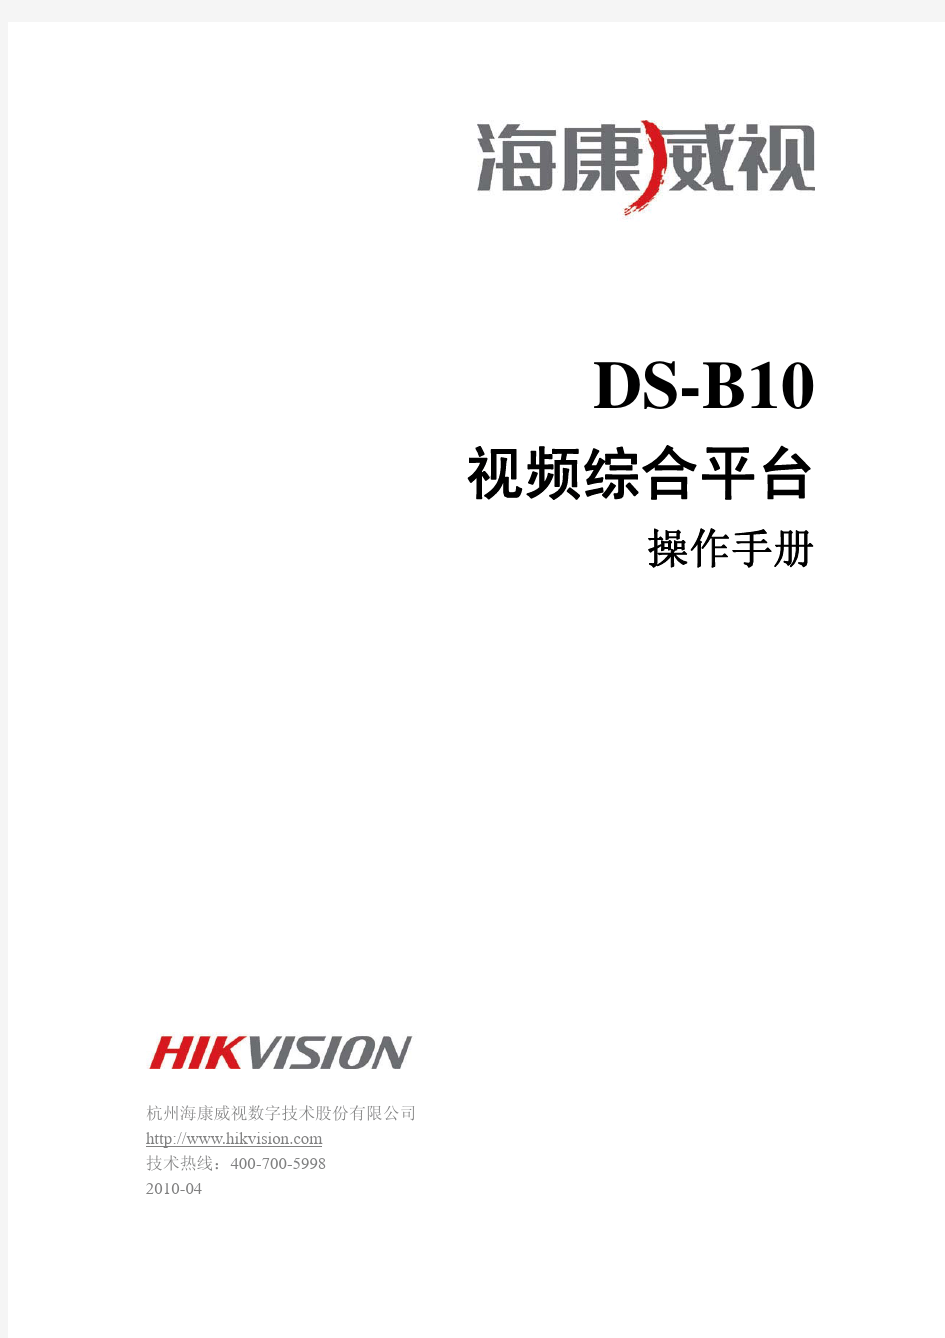 DS-B10视频综合平台操作手册